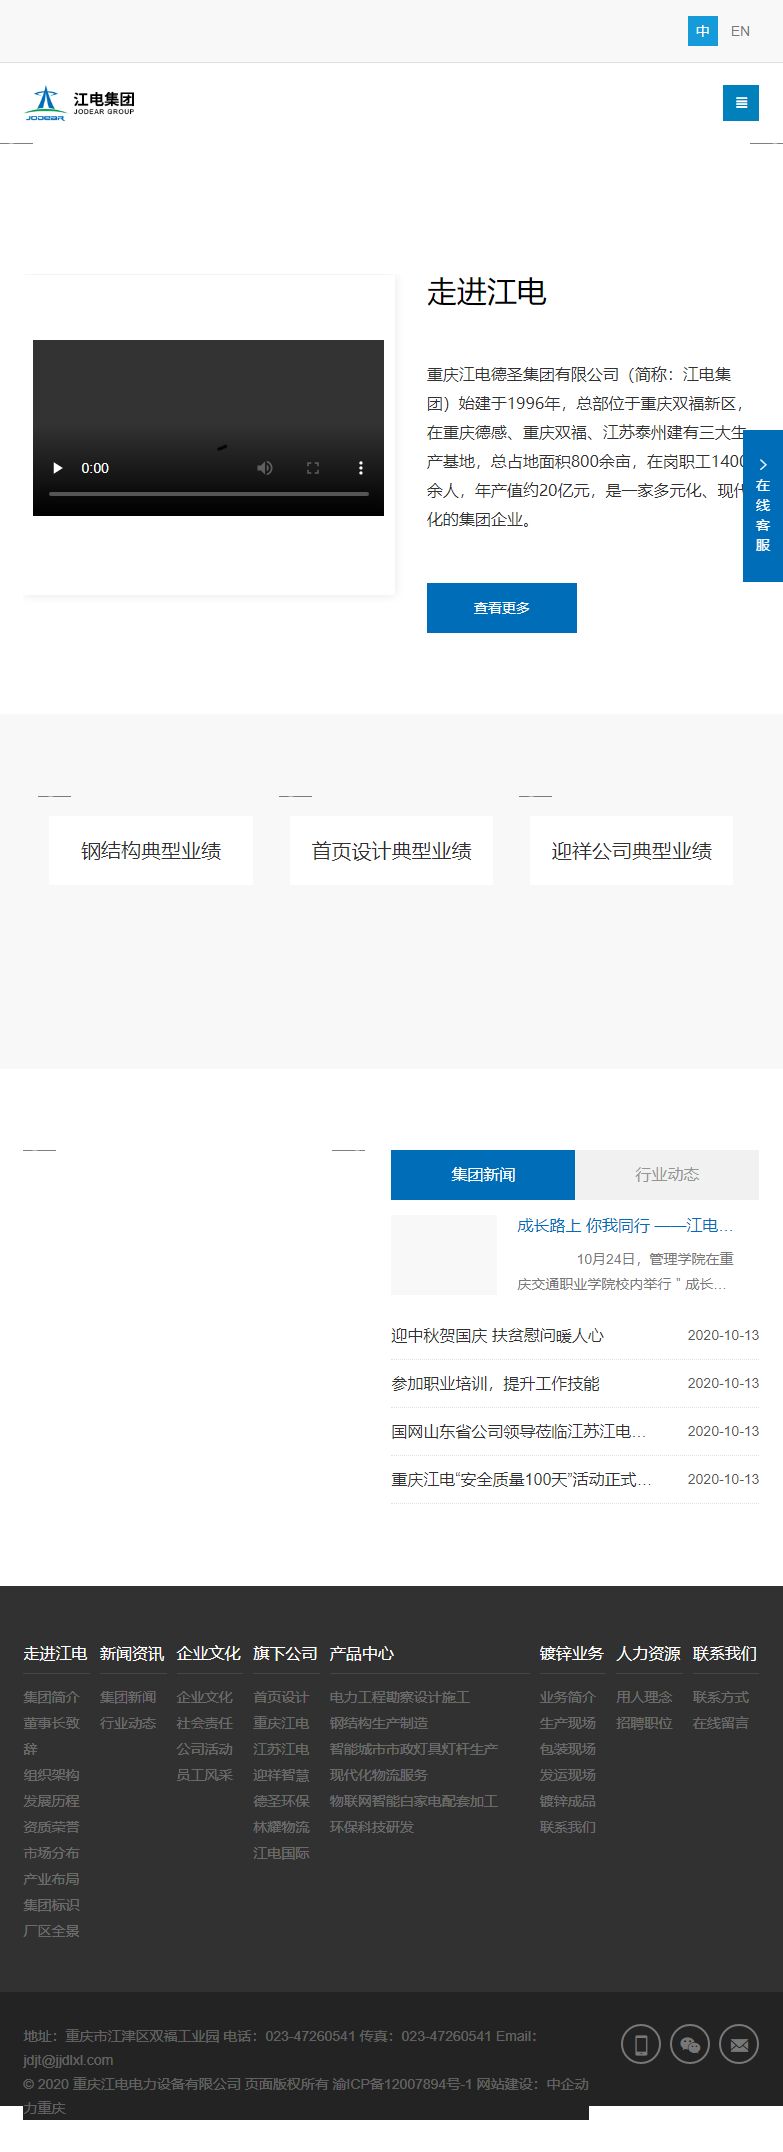 重庆江电电力设备有限公司网站案例